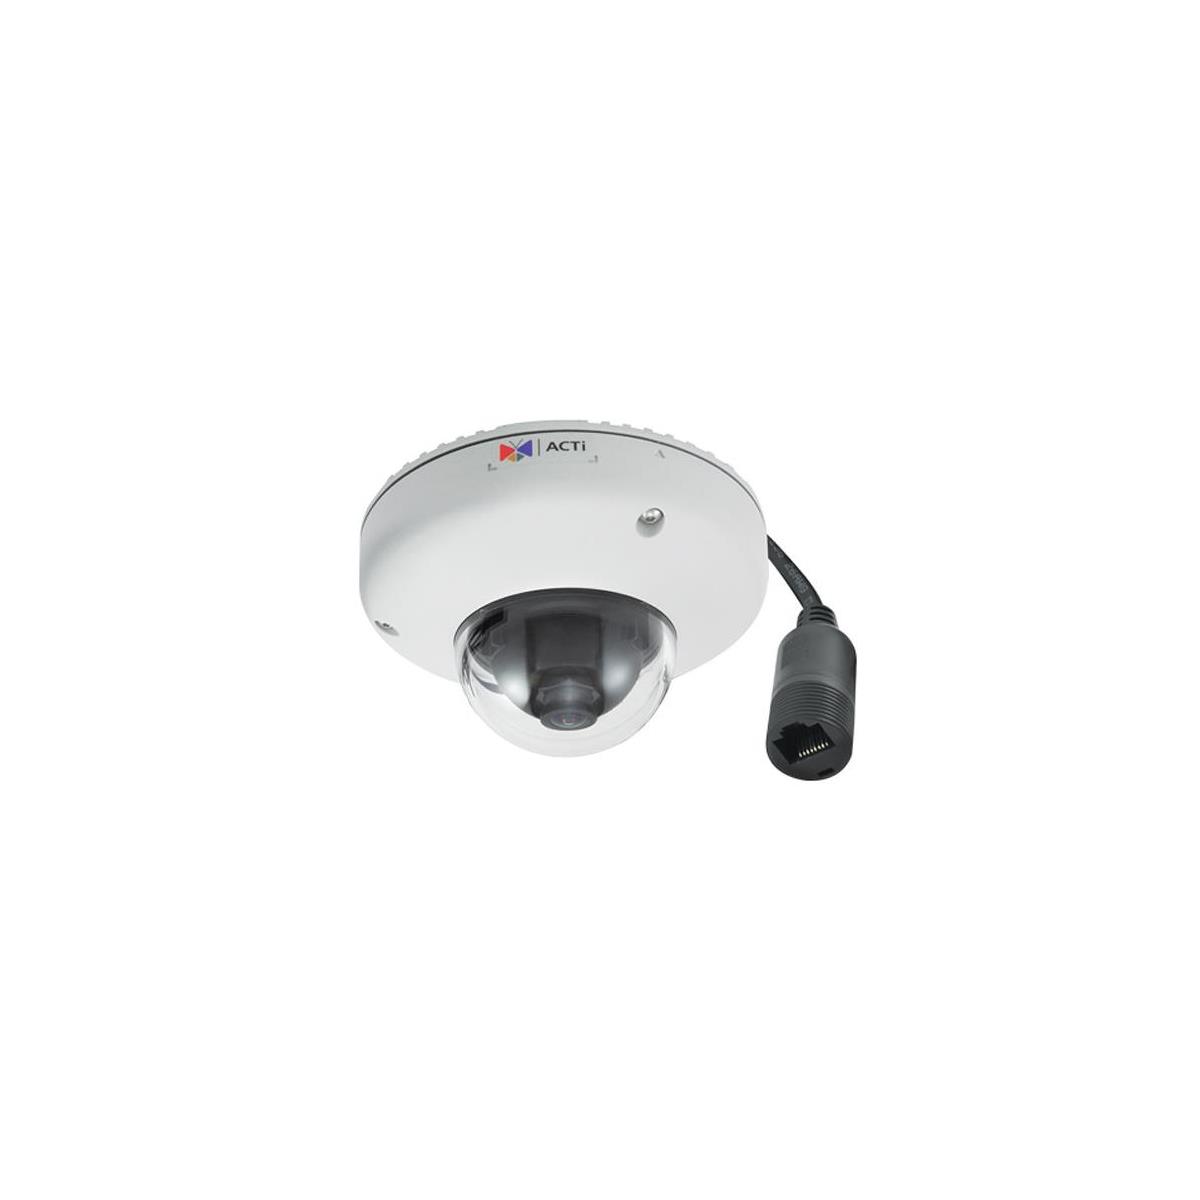 Image of ACTi E920 Outdoor Mini Dome Camera